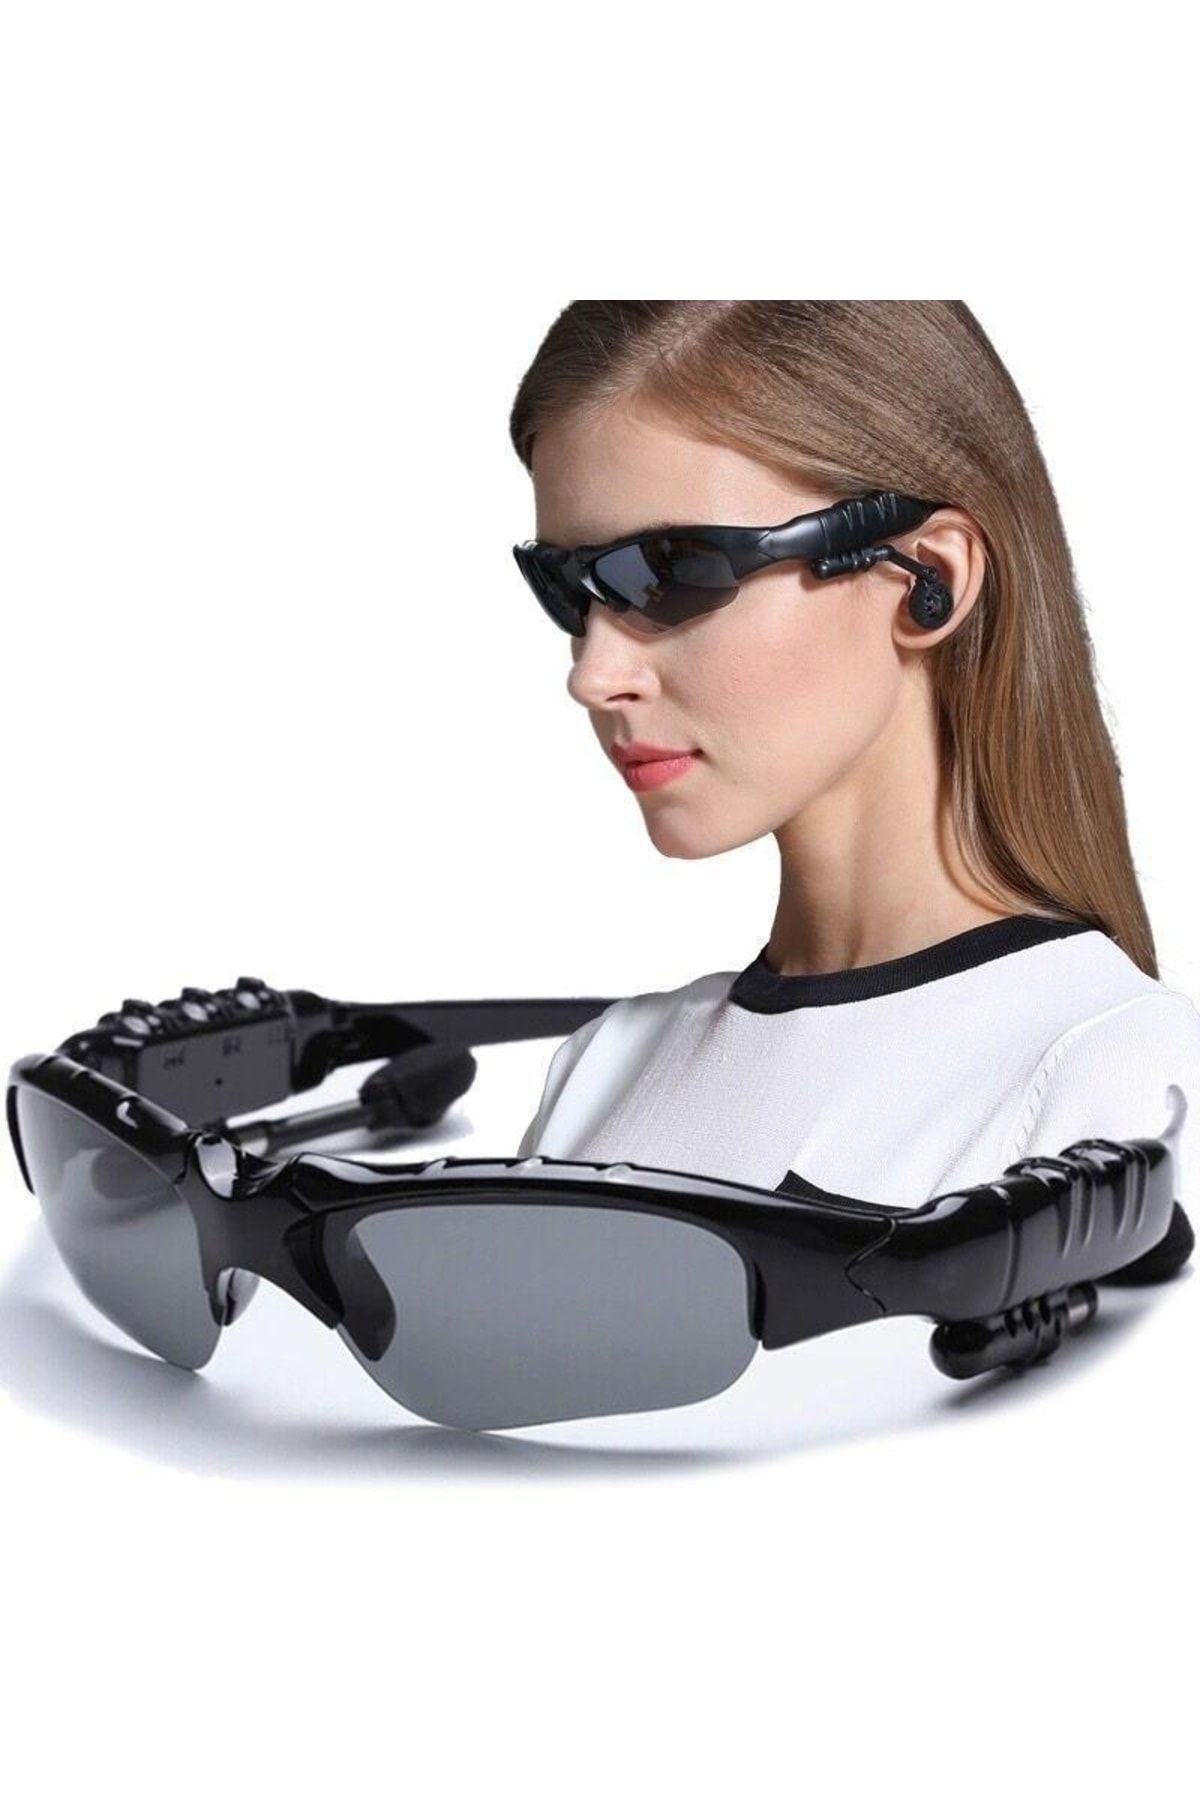 Bluetooth Stereo Kulaklık Güneş Gözlüğü Akıllı Gözlük Müzik Dinleme Telefon Görüşmesi X8S